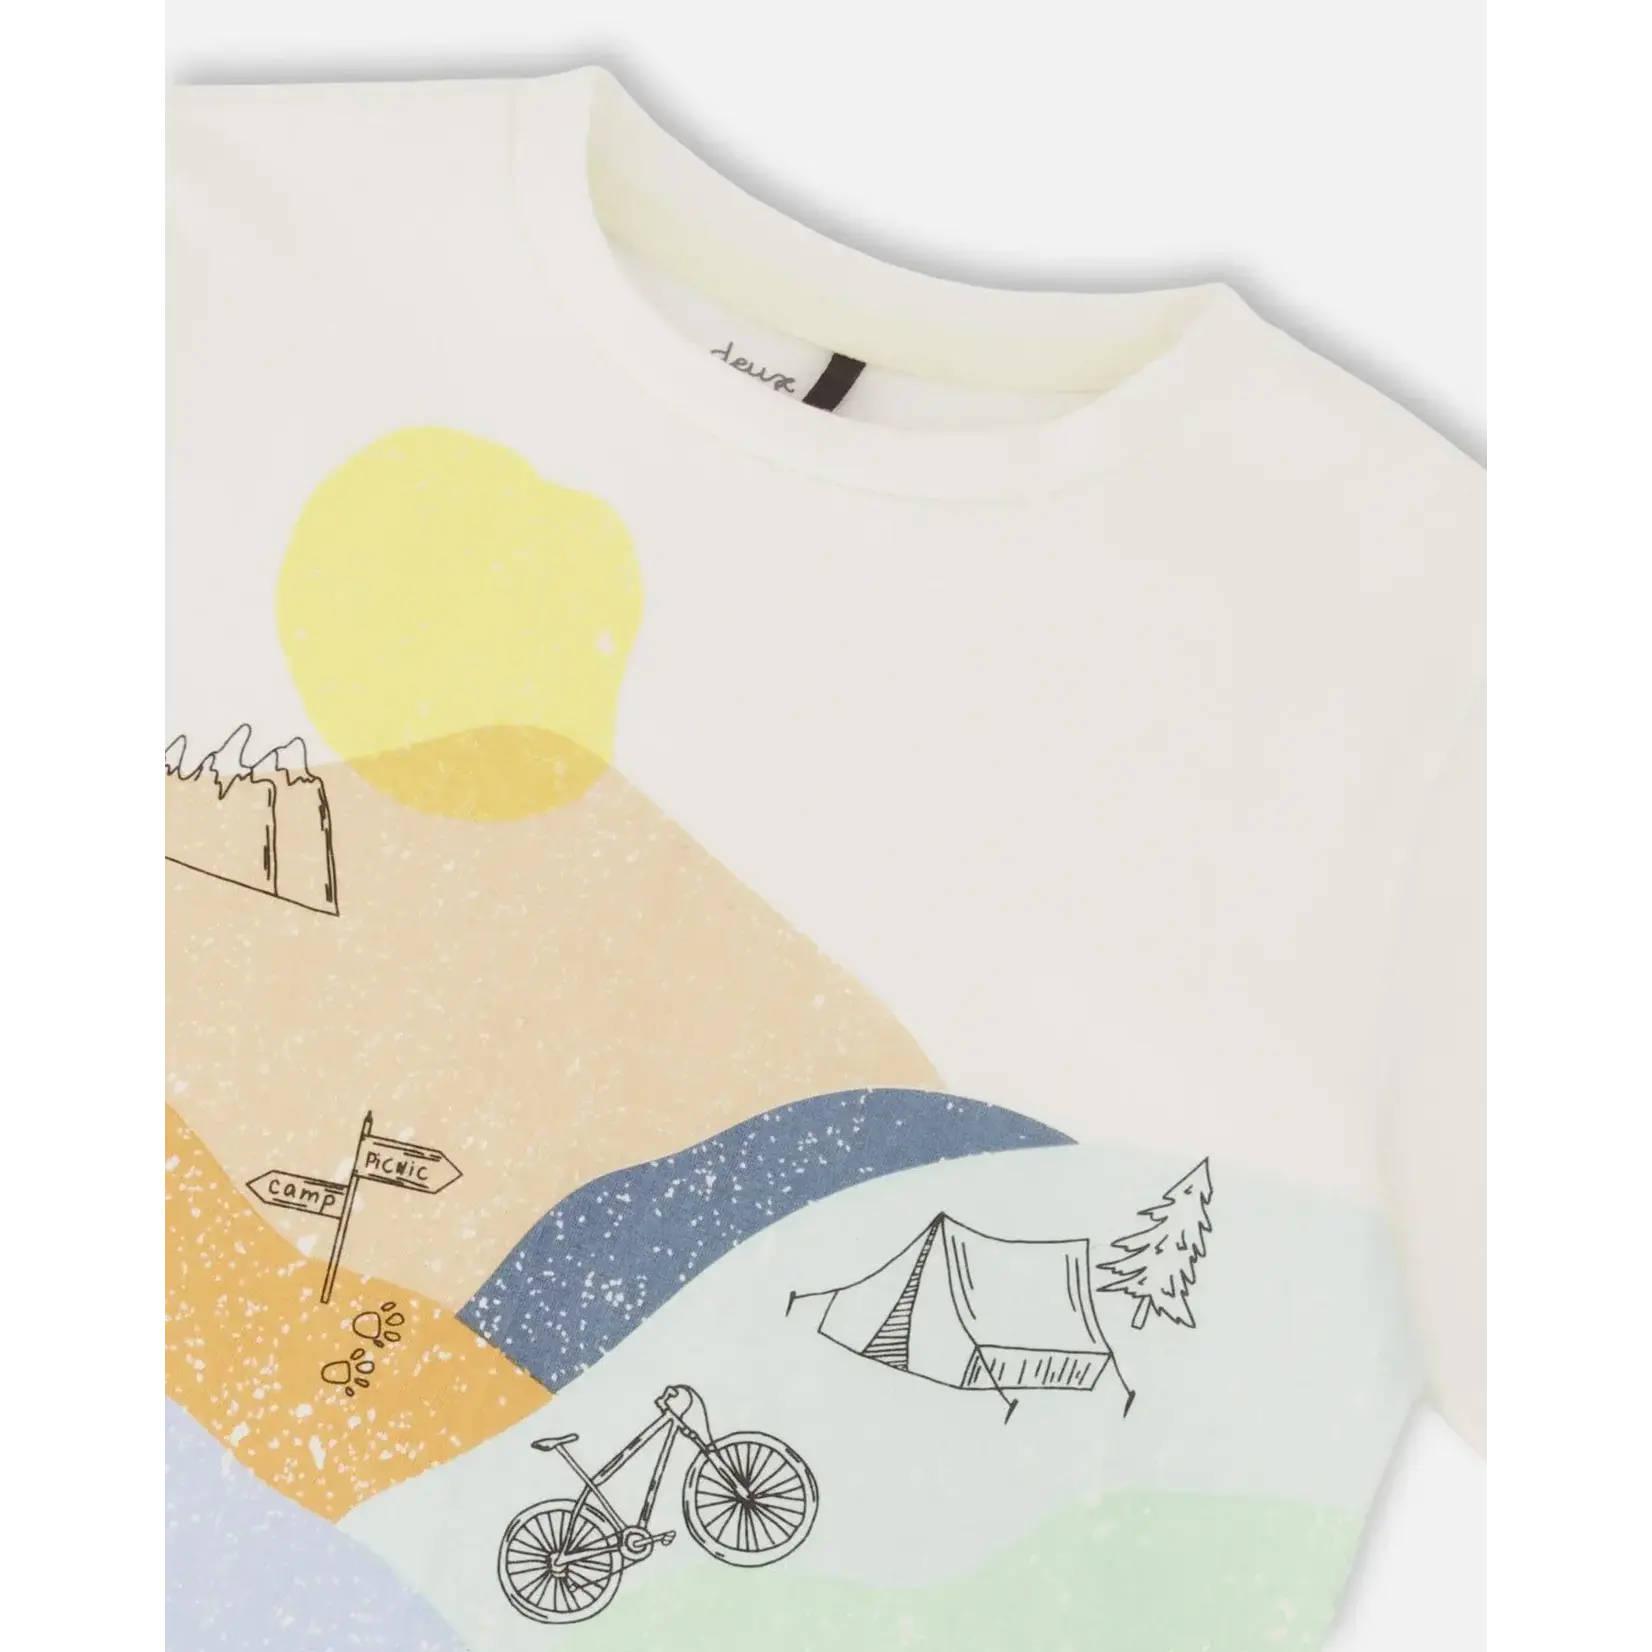 Deux par Deux DEUX PAR DEUX - Organic Cotton T-Shirt With Large Landscape Print